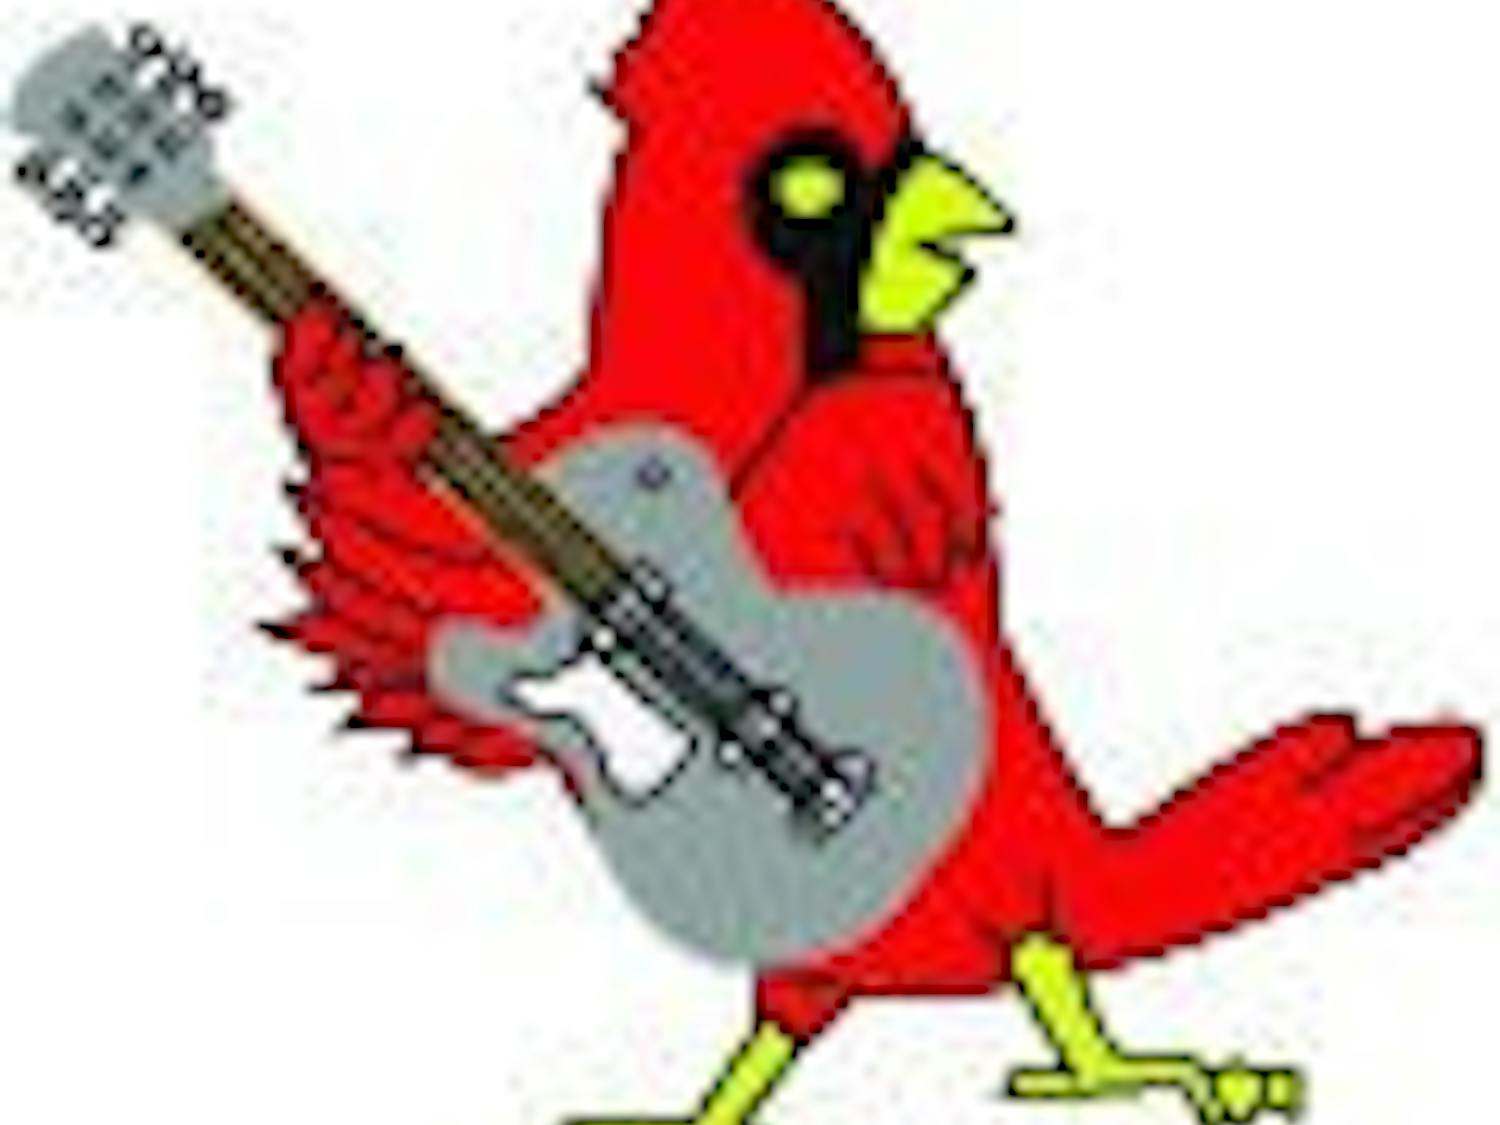 Cardinal Guitar Player